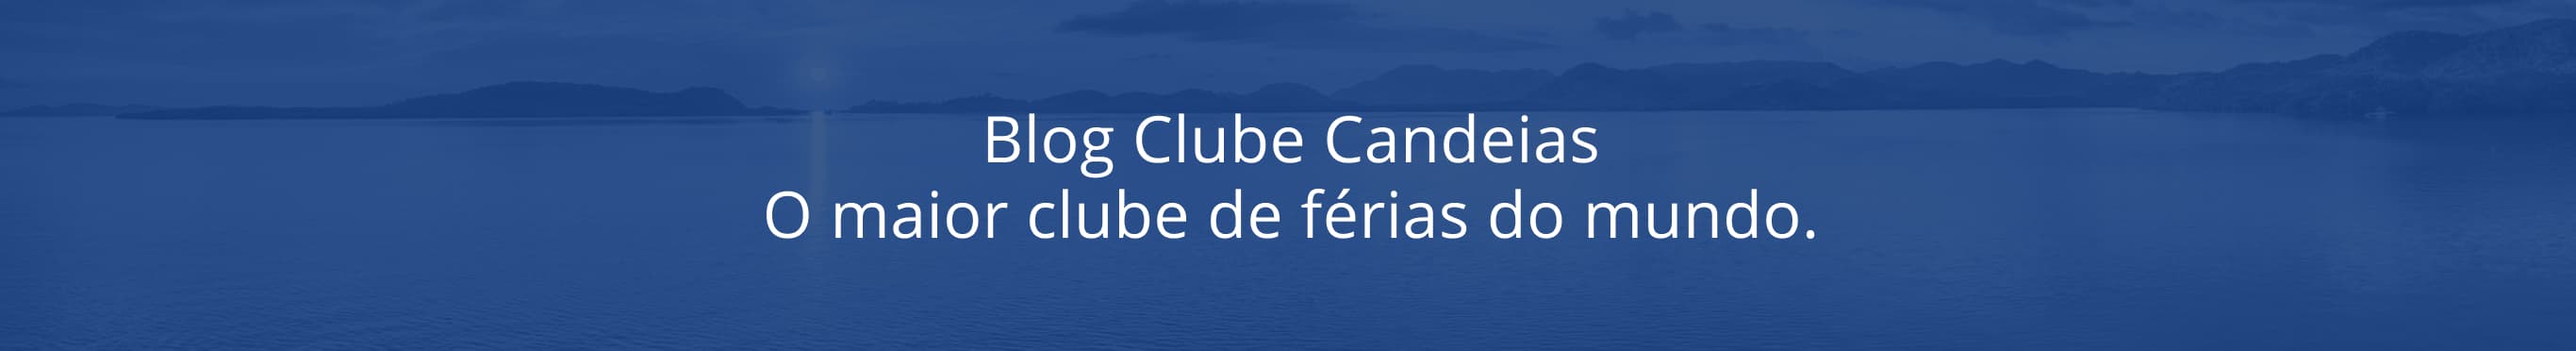 Blog Clube Candeias - O maior clube de férias do mundo.